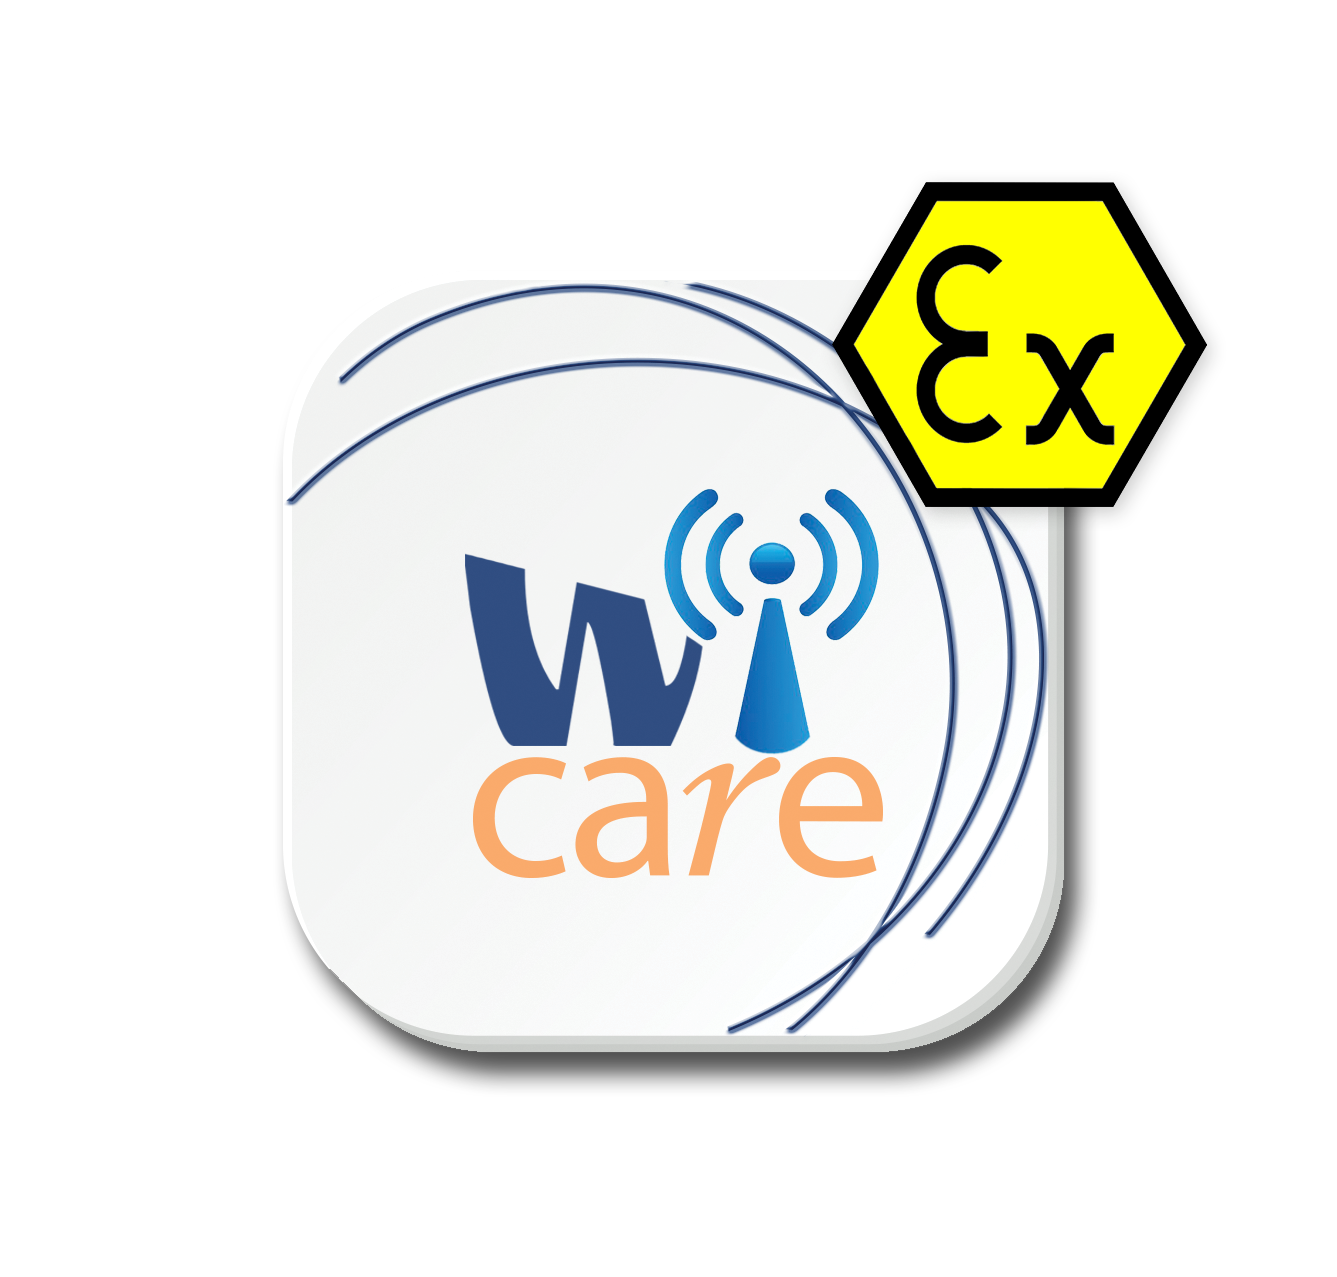 Wi-care_logoAtex-3